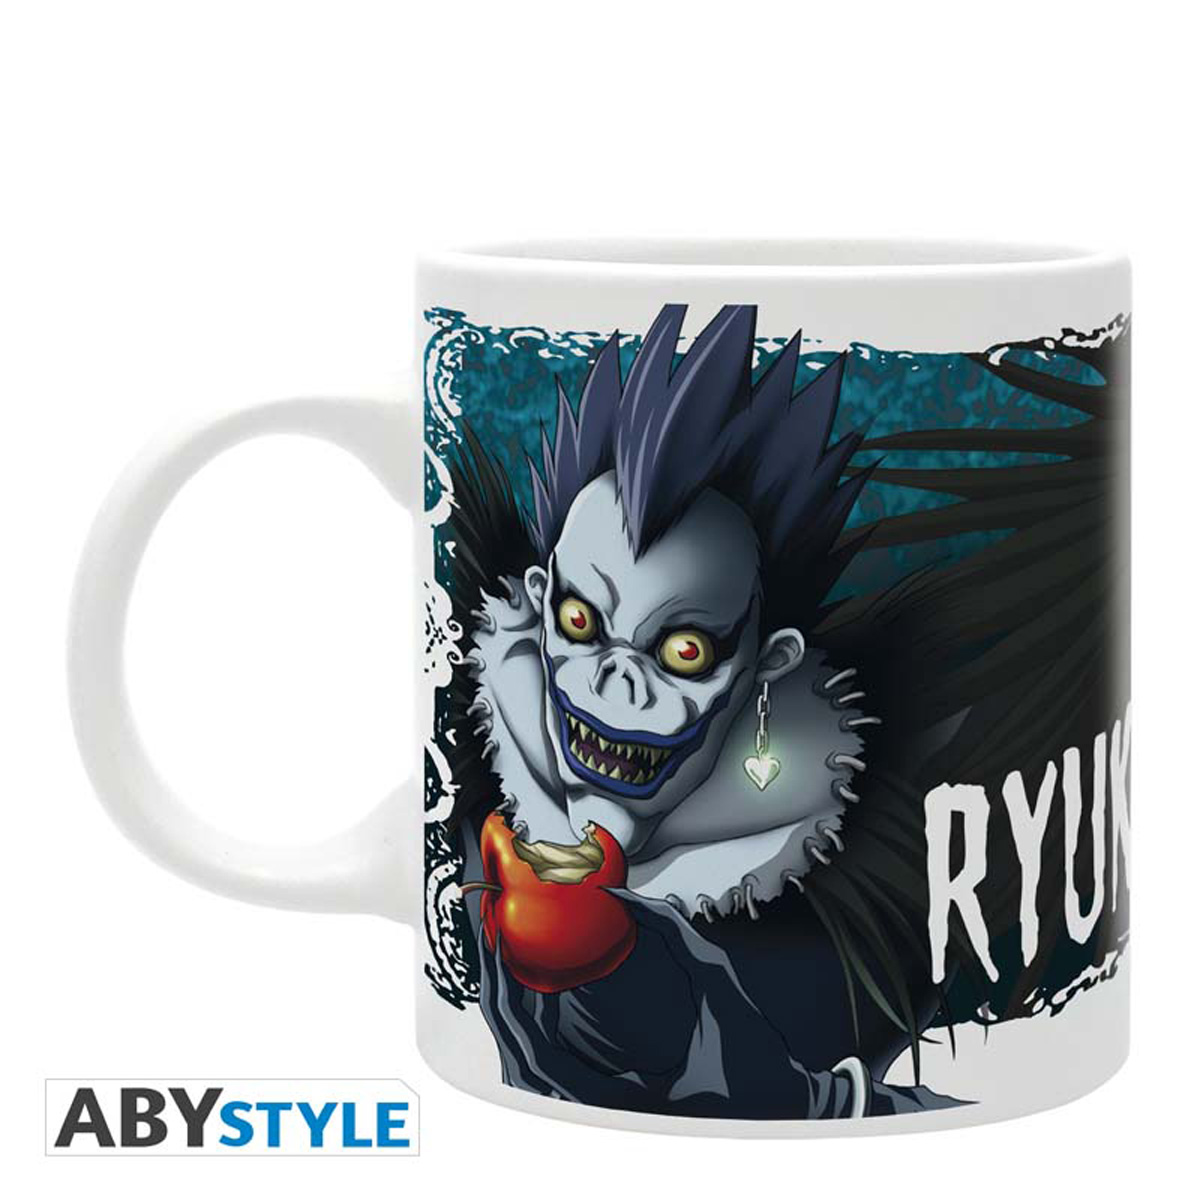 Ryuk Death Note Mug image count 1